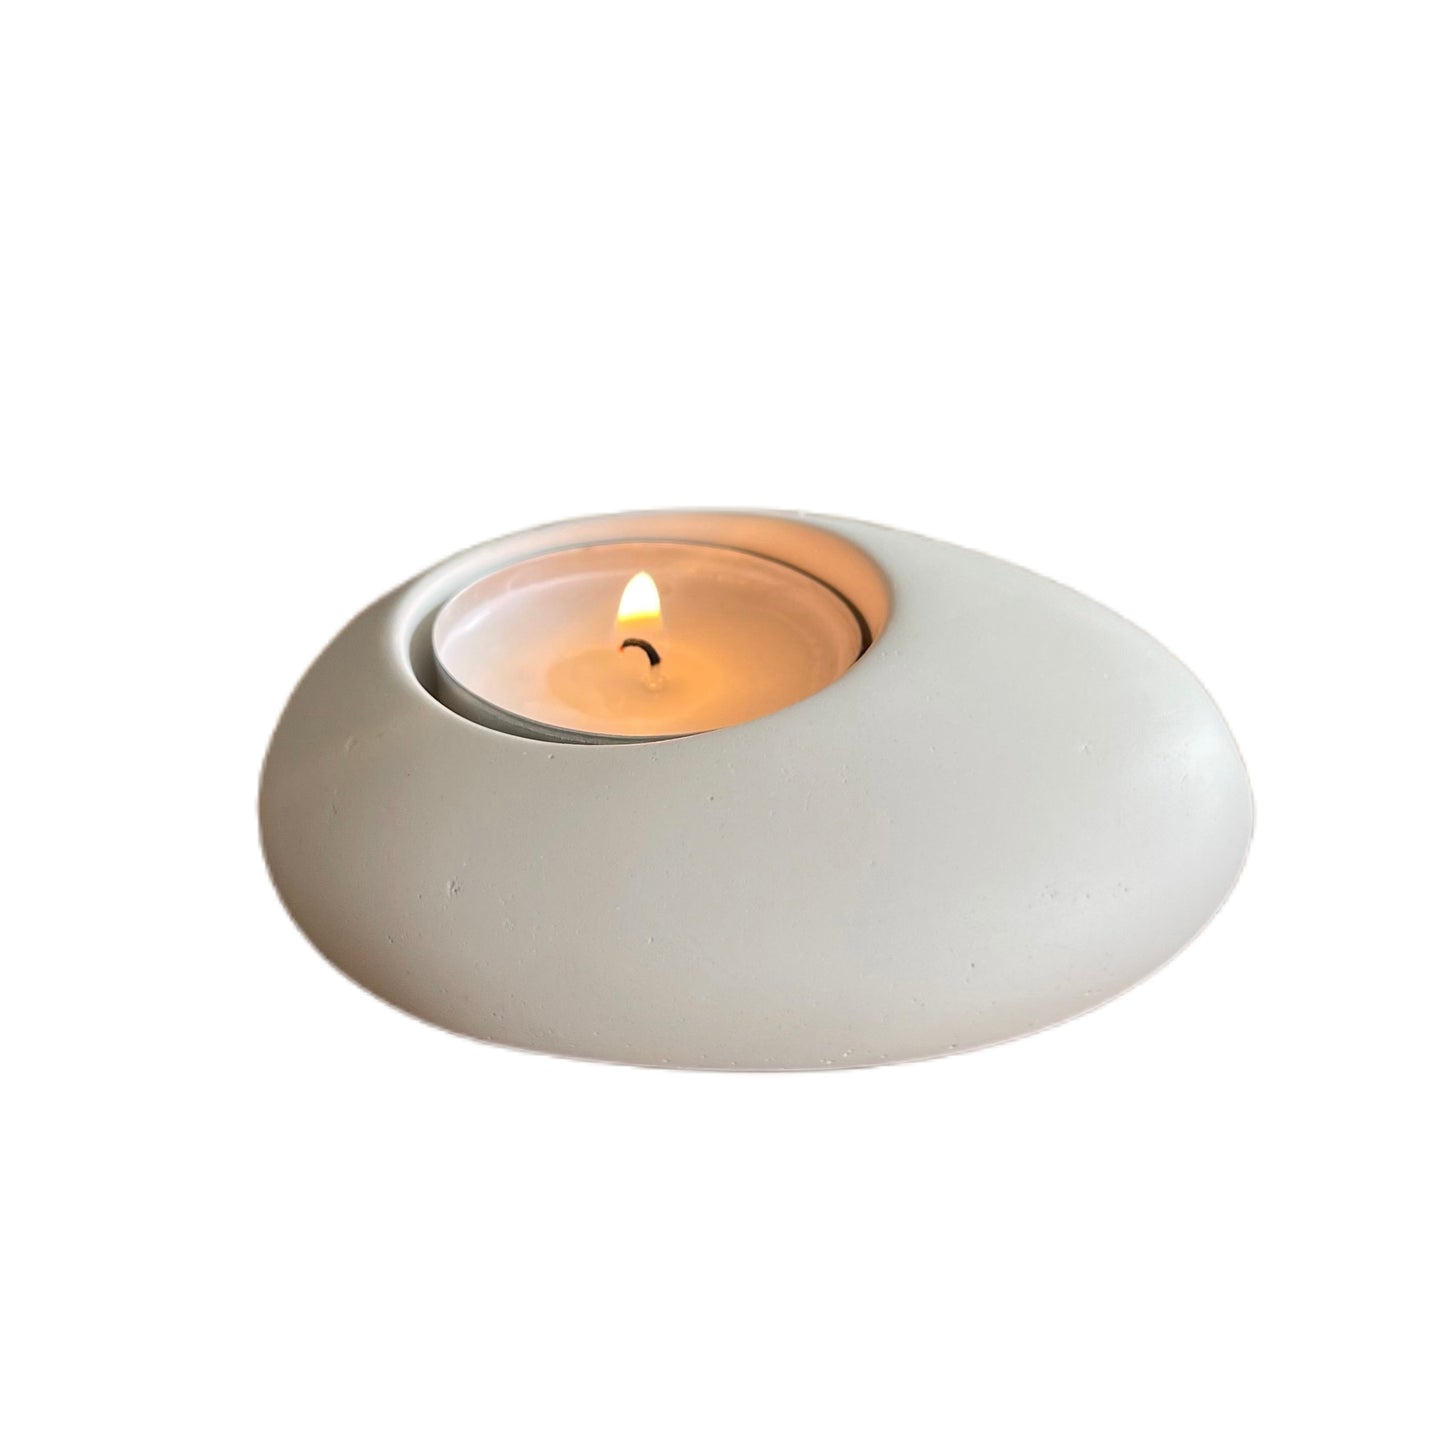 White pebble tealight holder